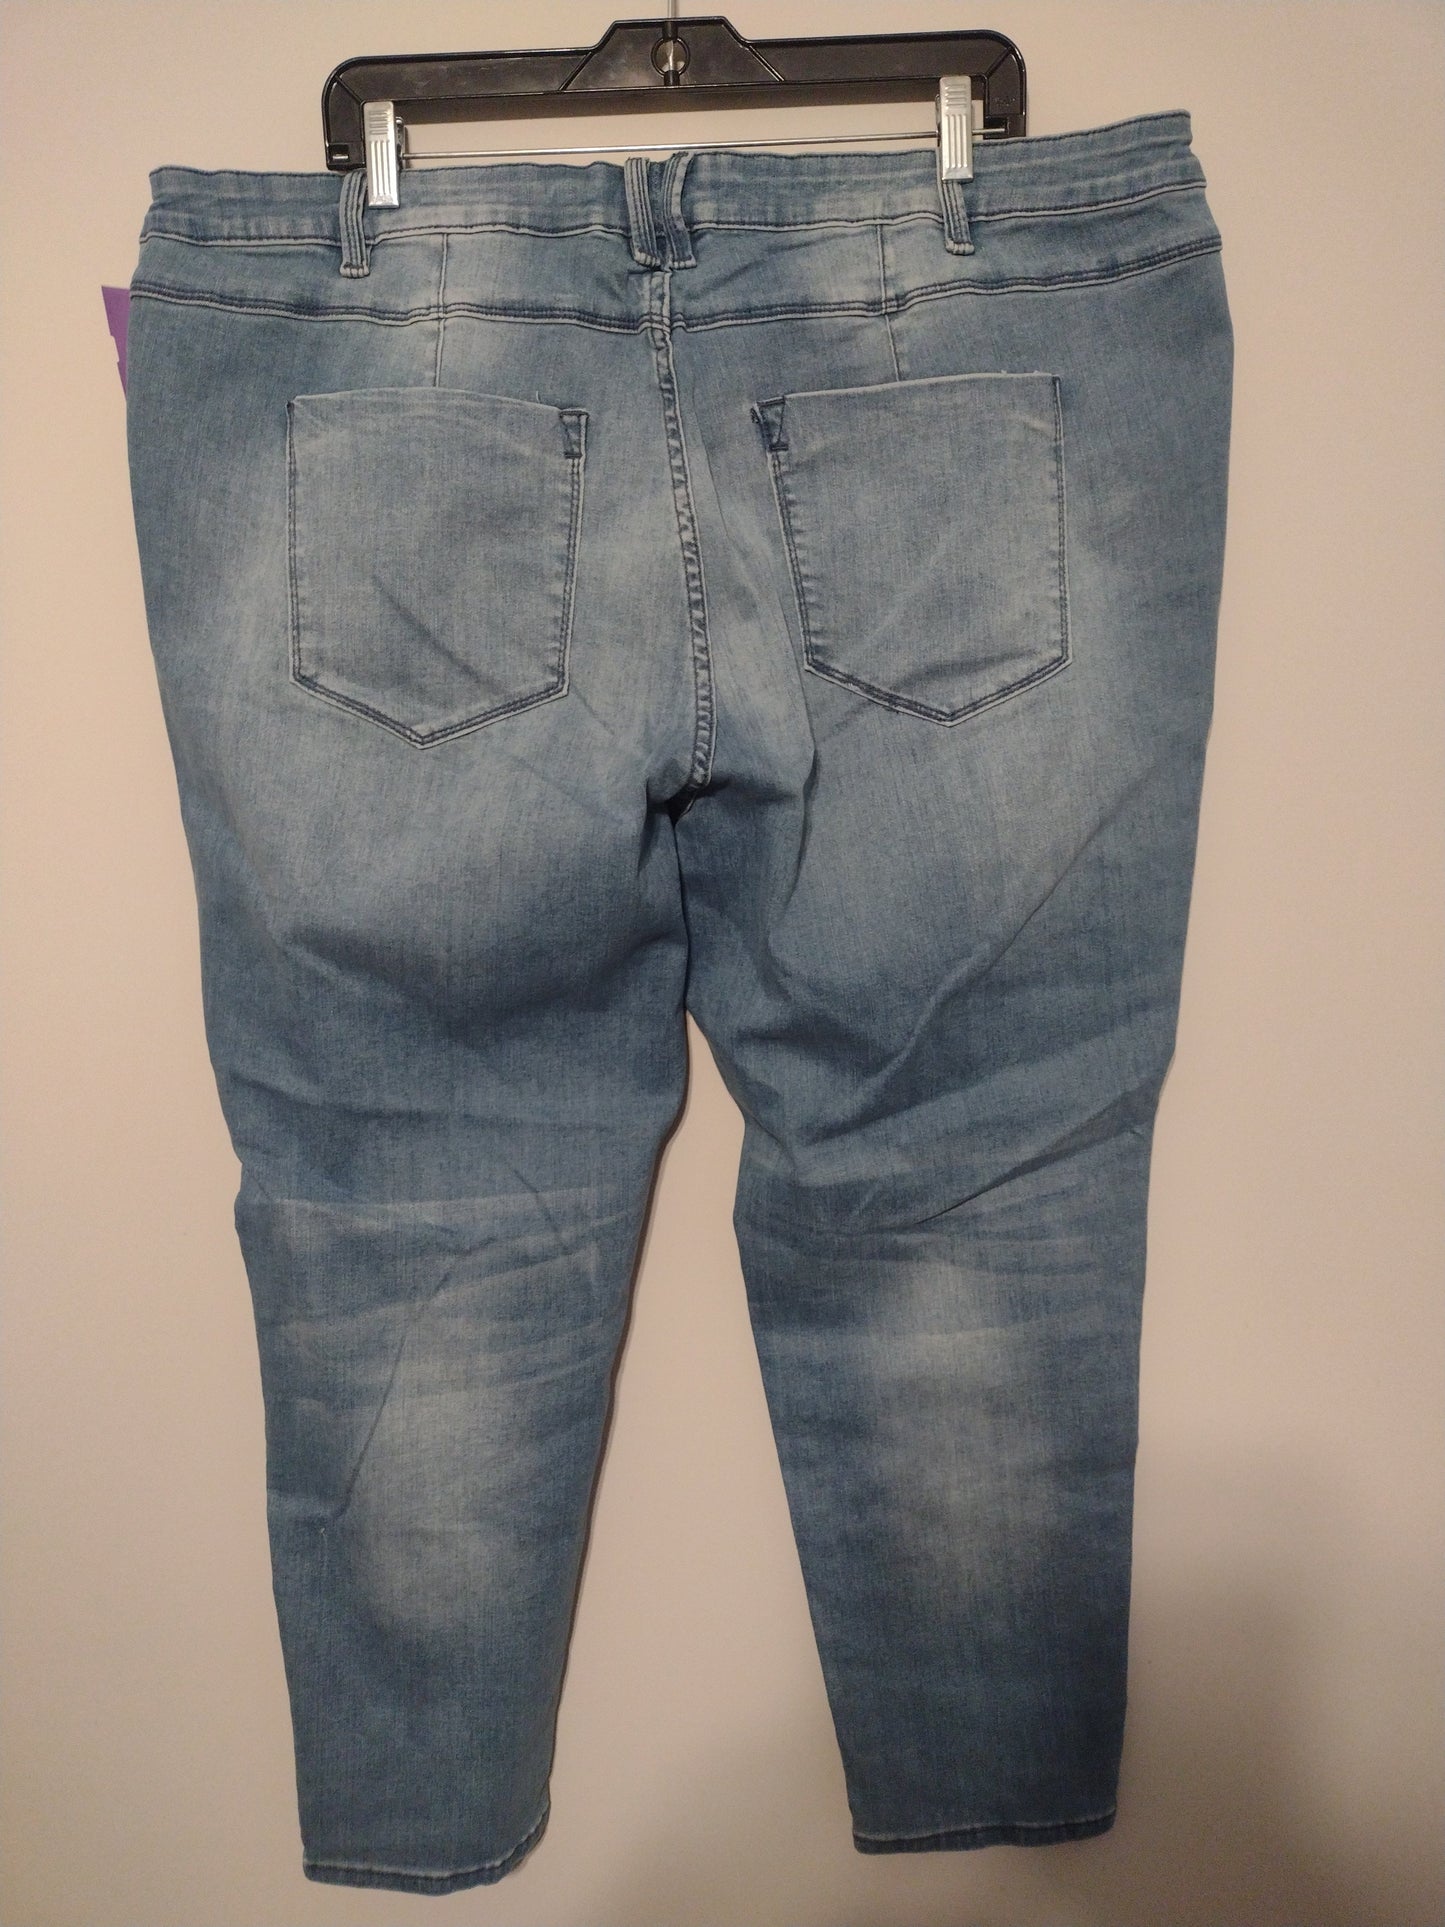 Jeans Skinny By Denim 24/7  Size: 24